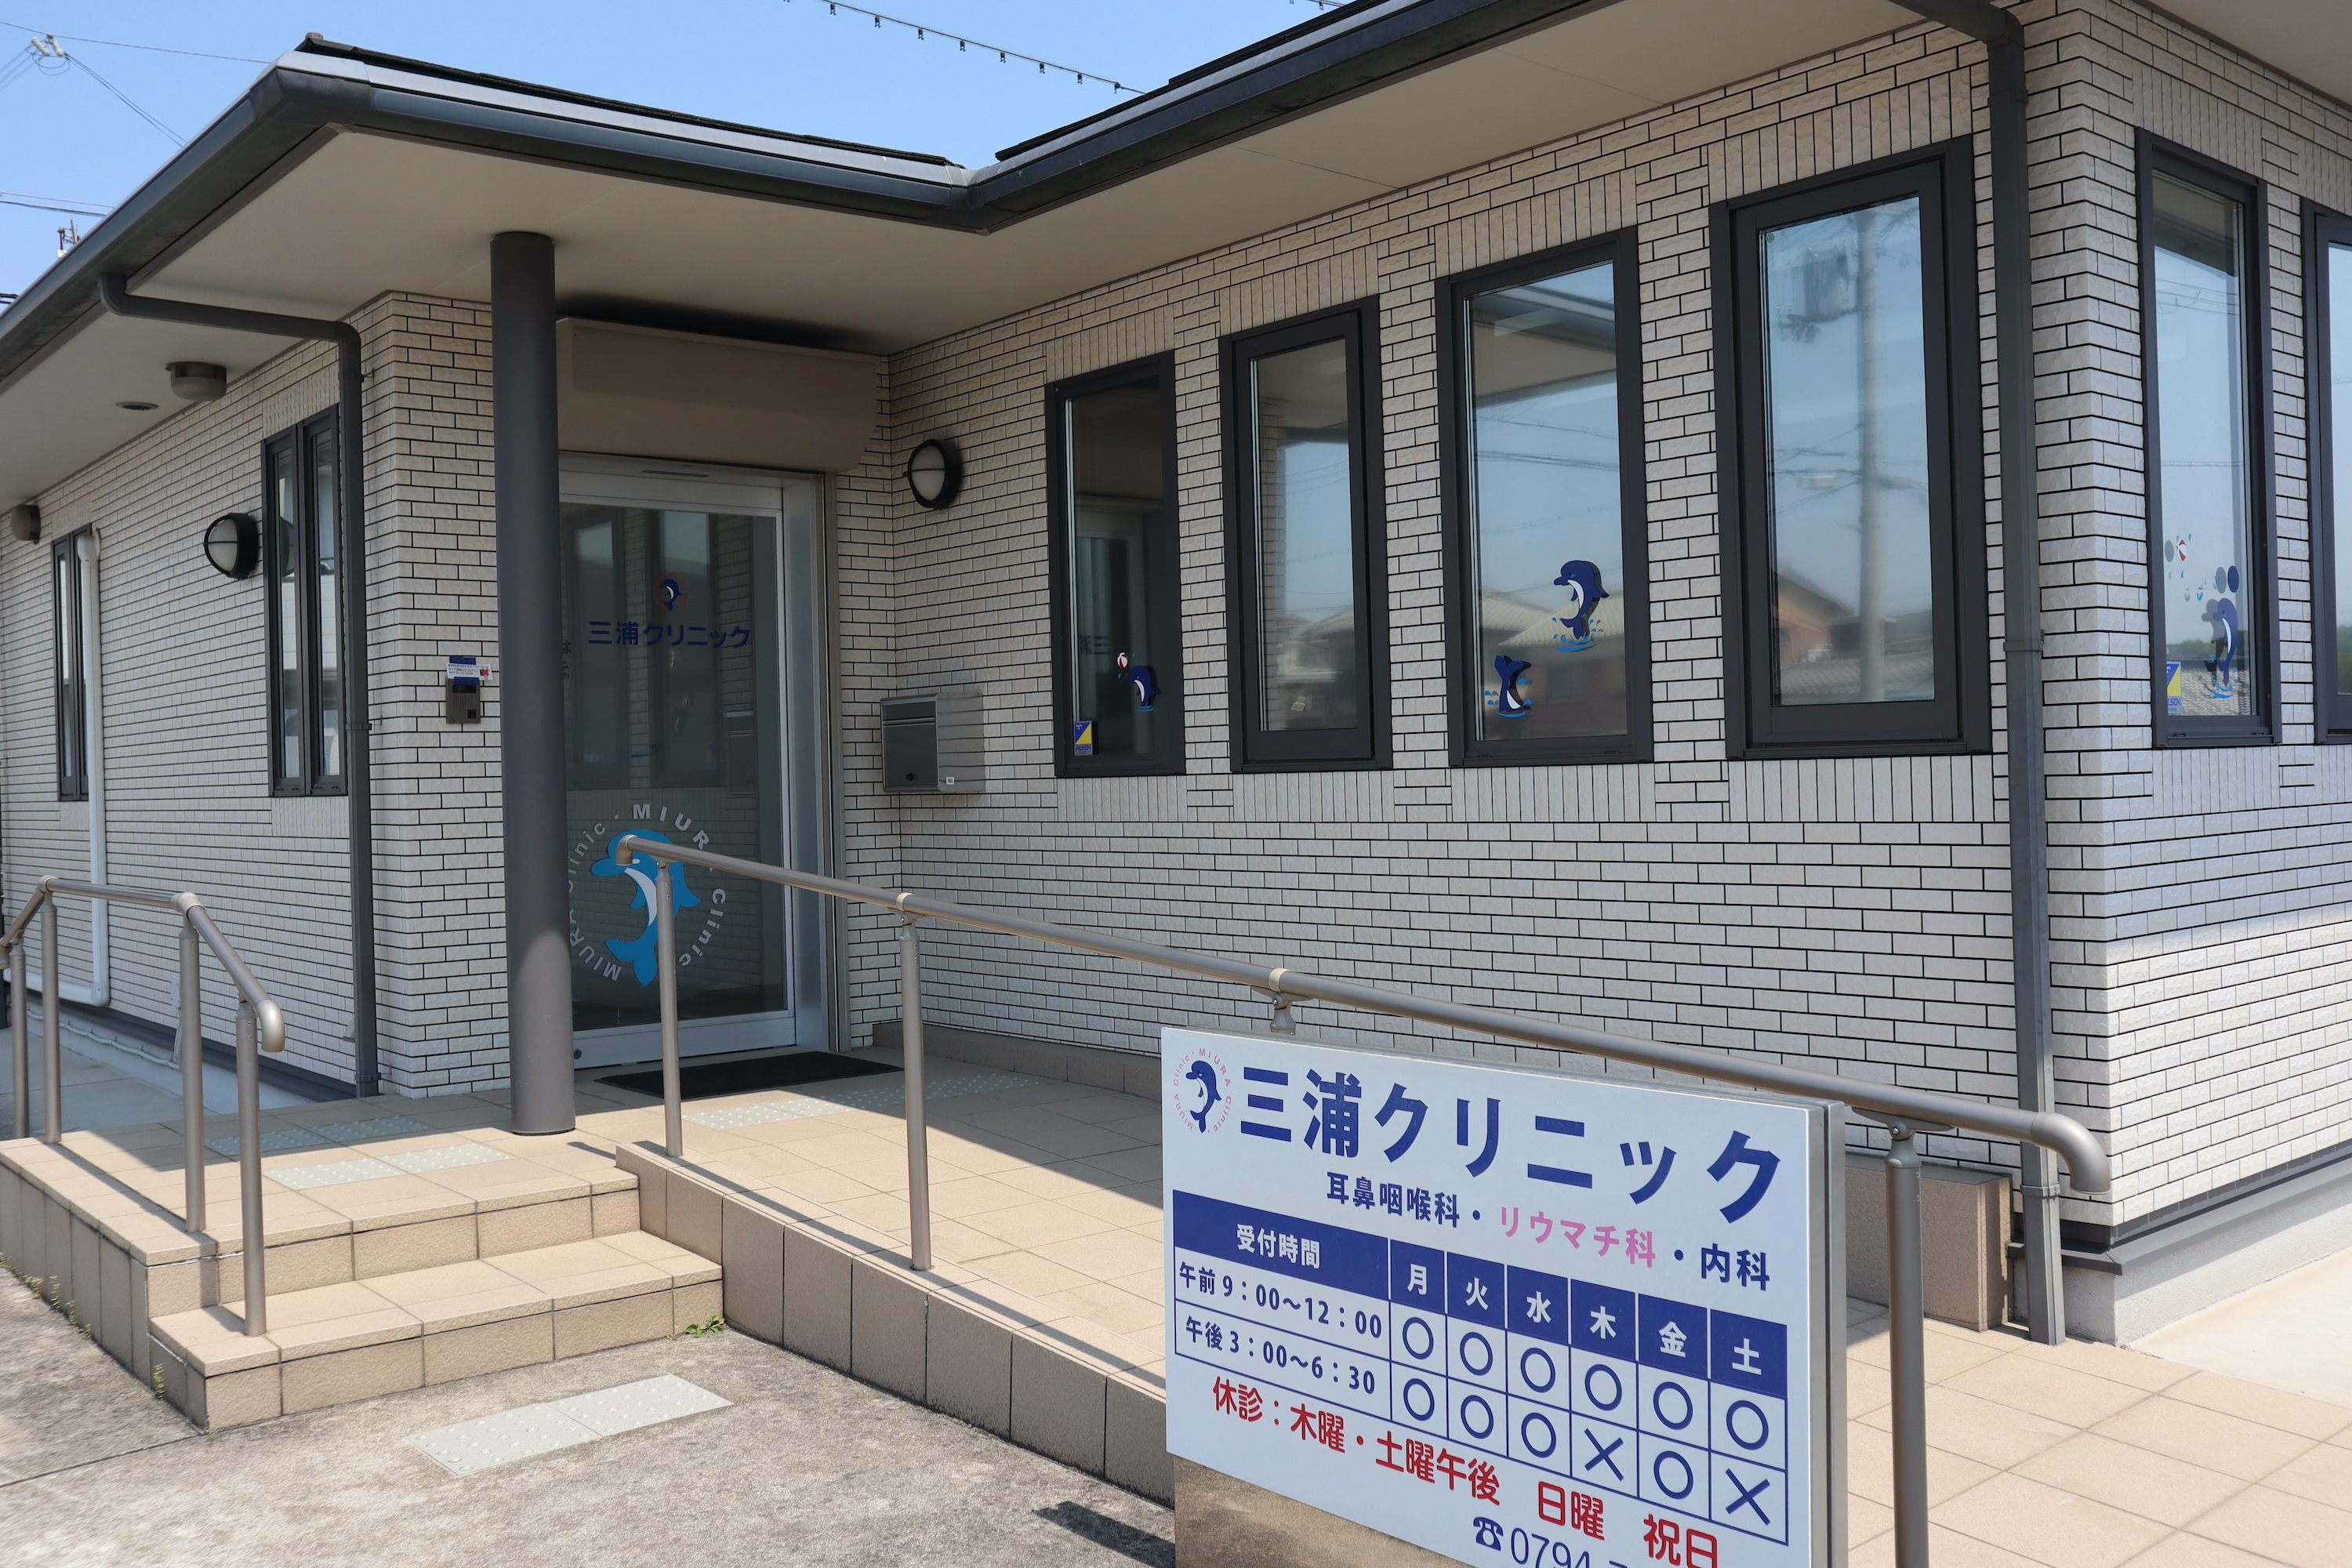 兵庫県小野市の三浦クリニックは、地域の皆さまの『かかりつけ医』として健康をサポートします。